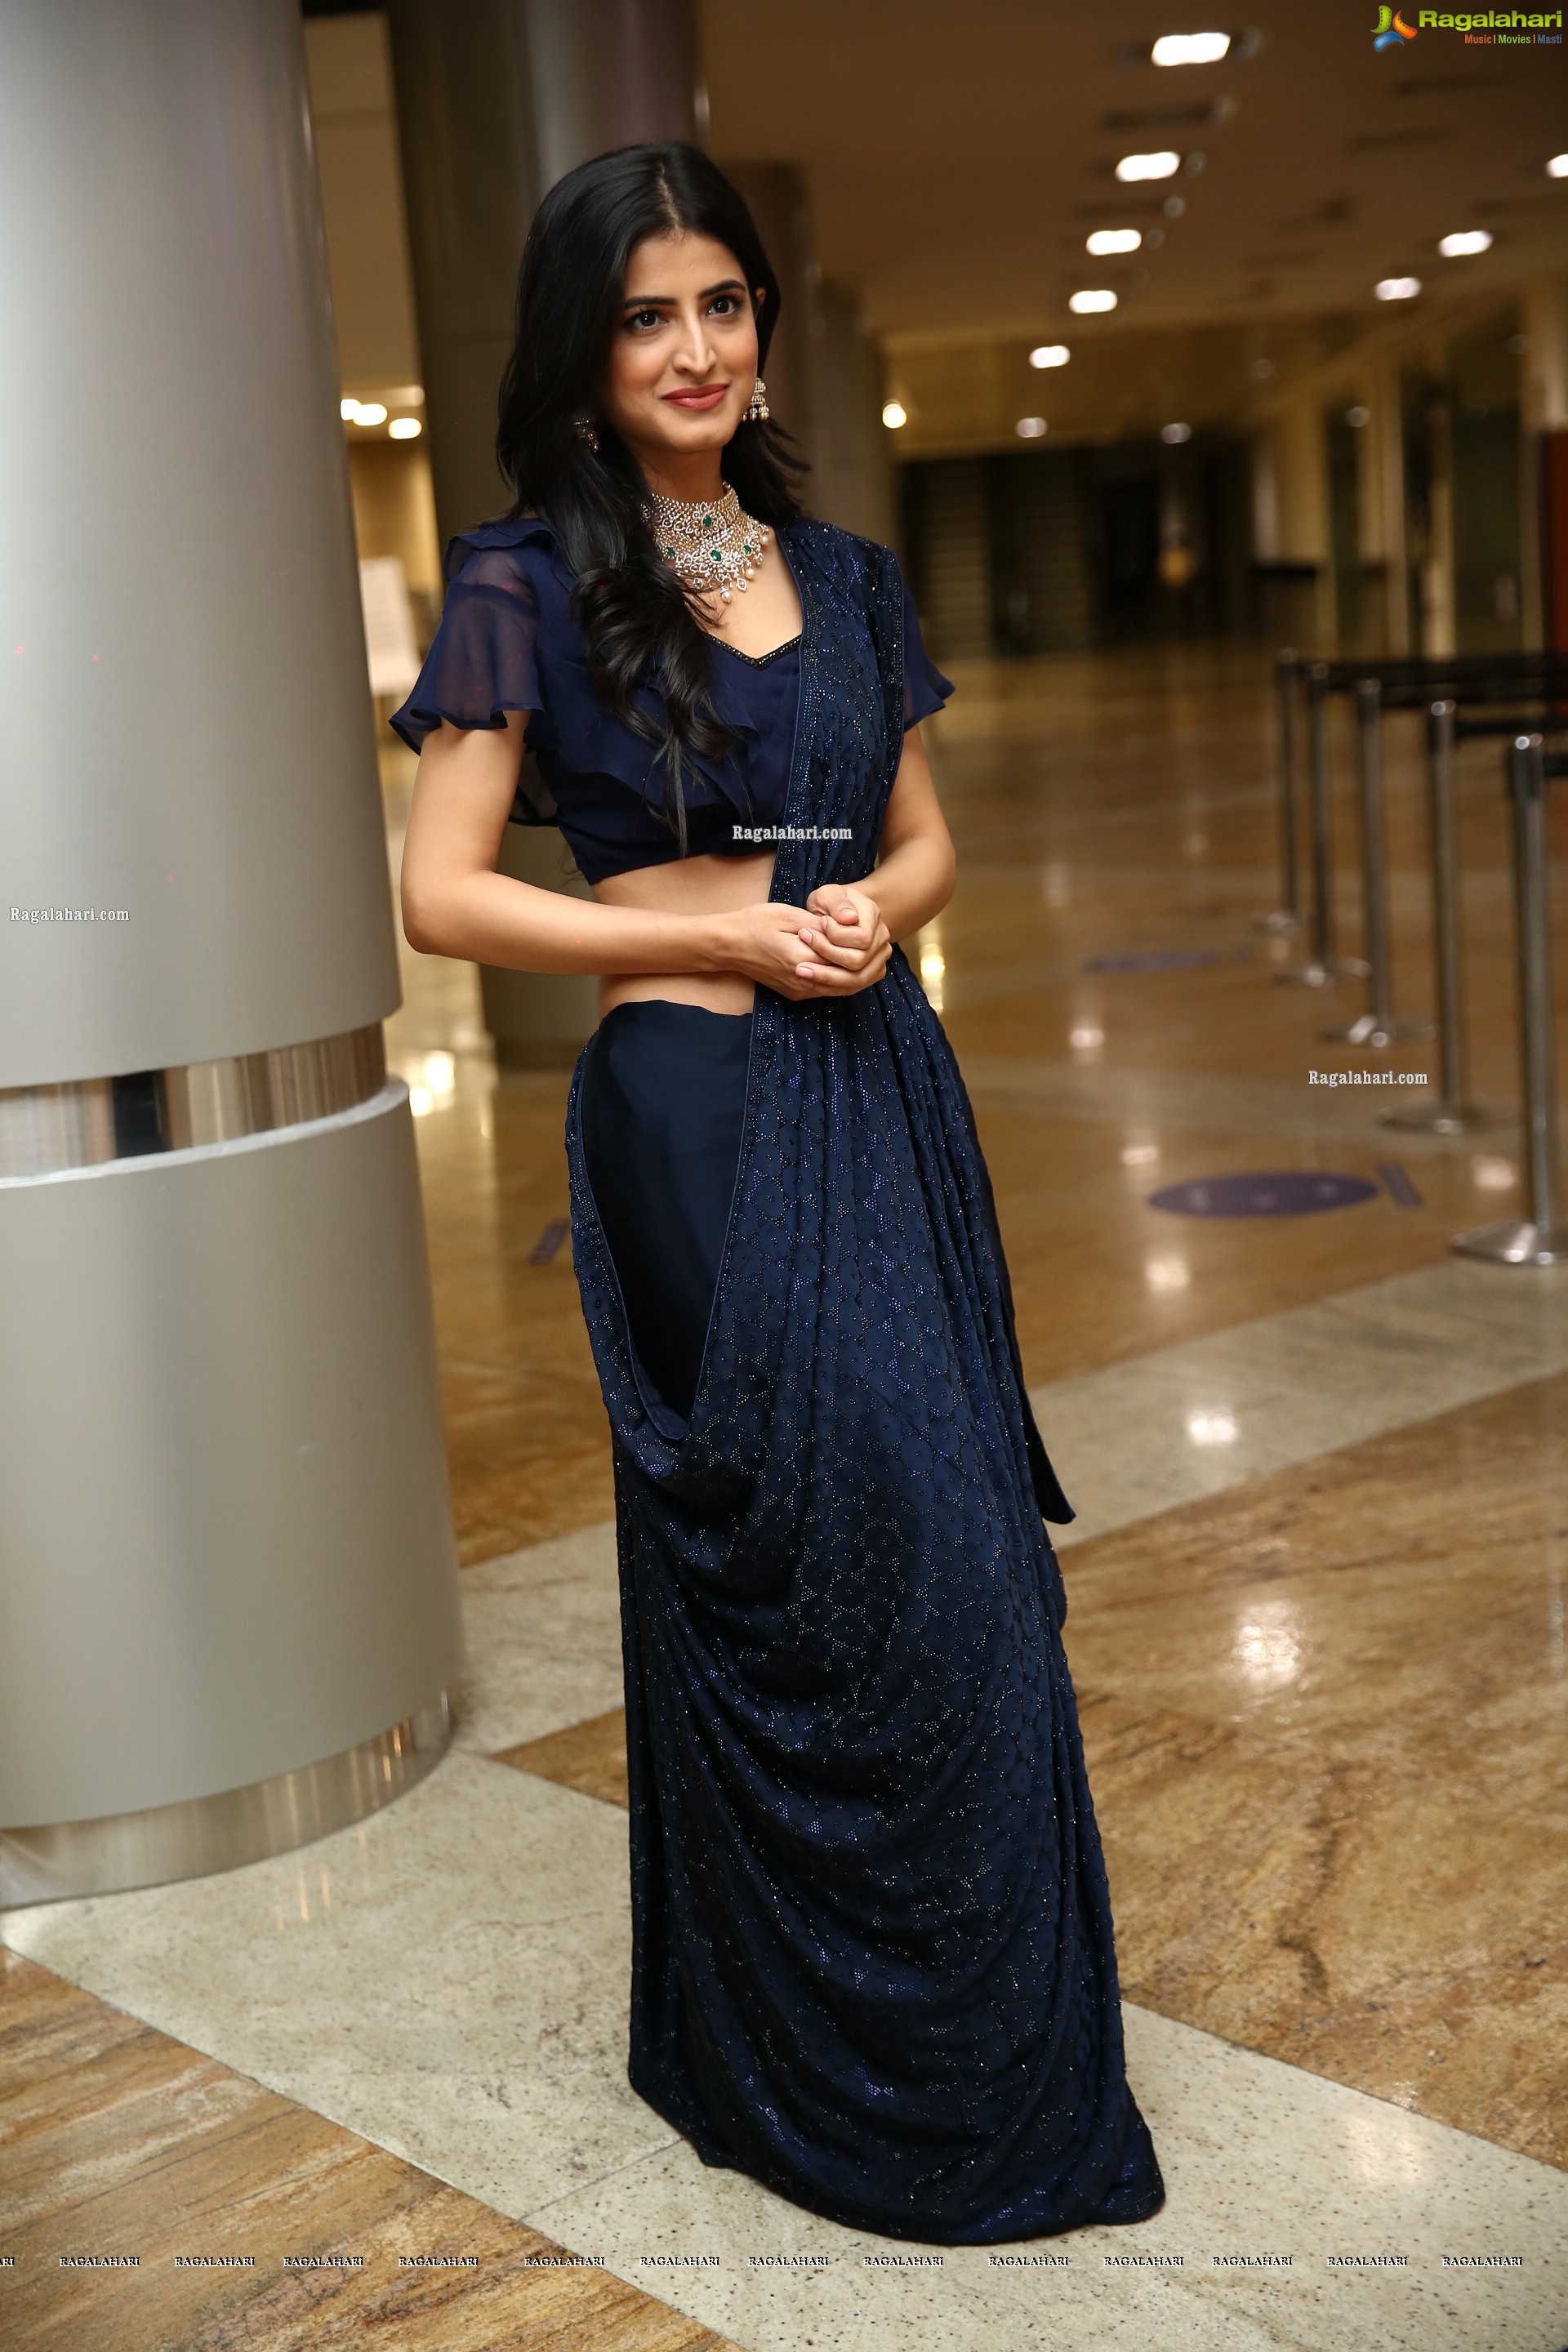 Vinali Bhatnagar at DIA 2021 Awards, HD Photo Gallery